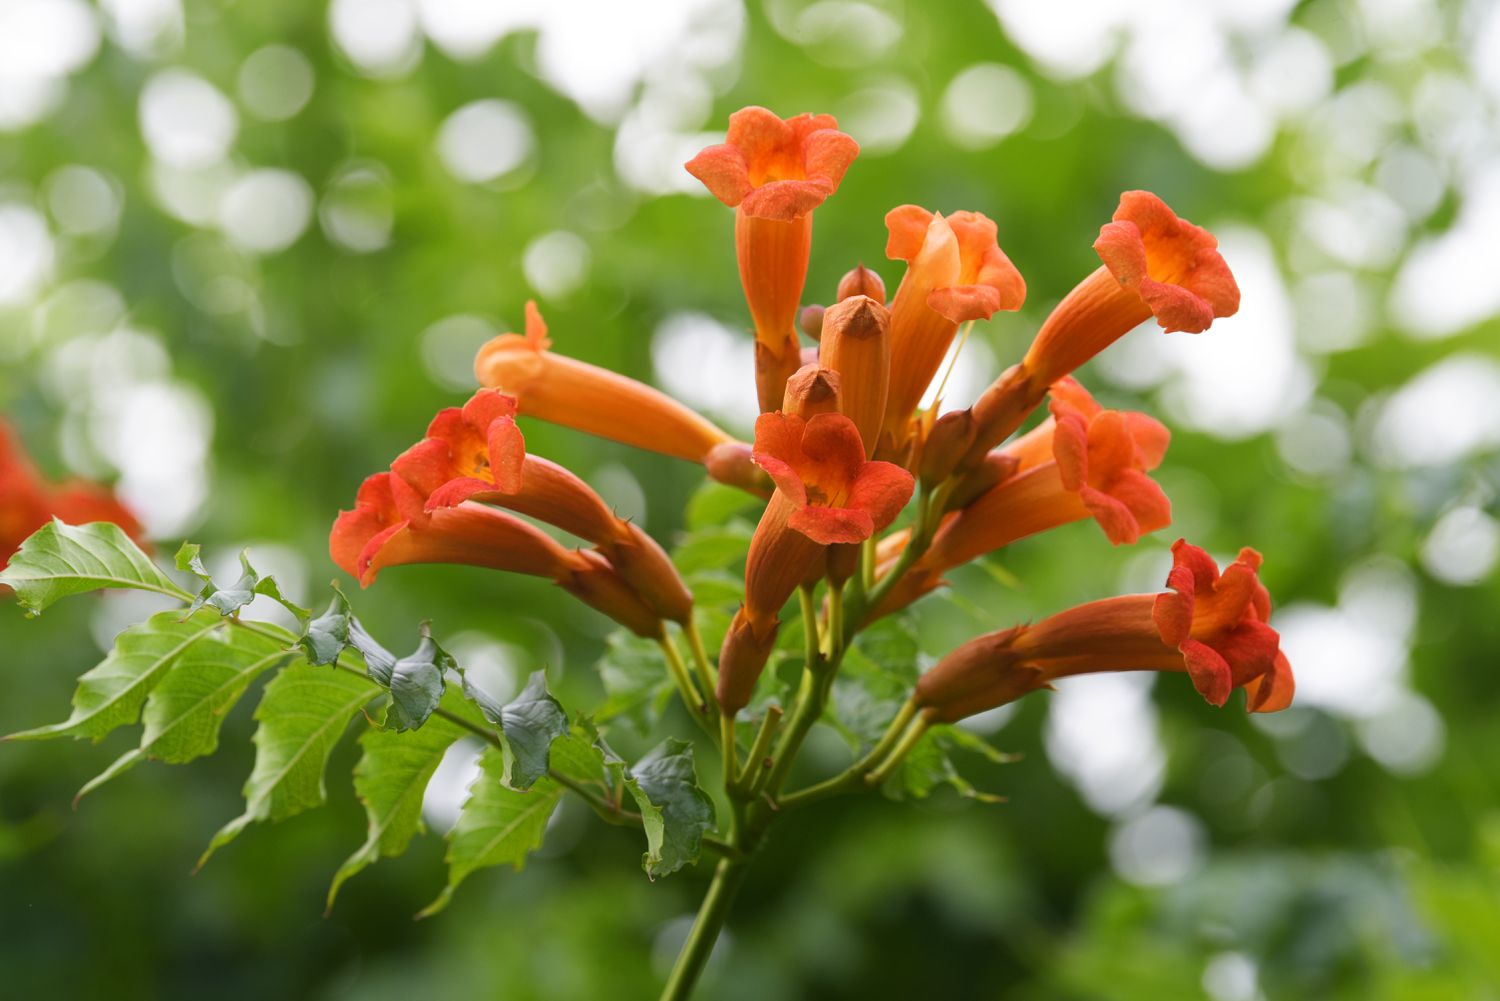 Trompetenrebe mit kleinen orangefarbenen röhrenförmigen Blüten und Blättern, die an einem Stiel hängen